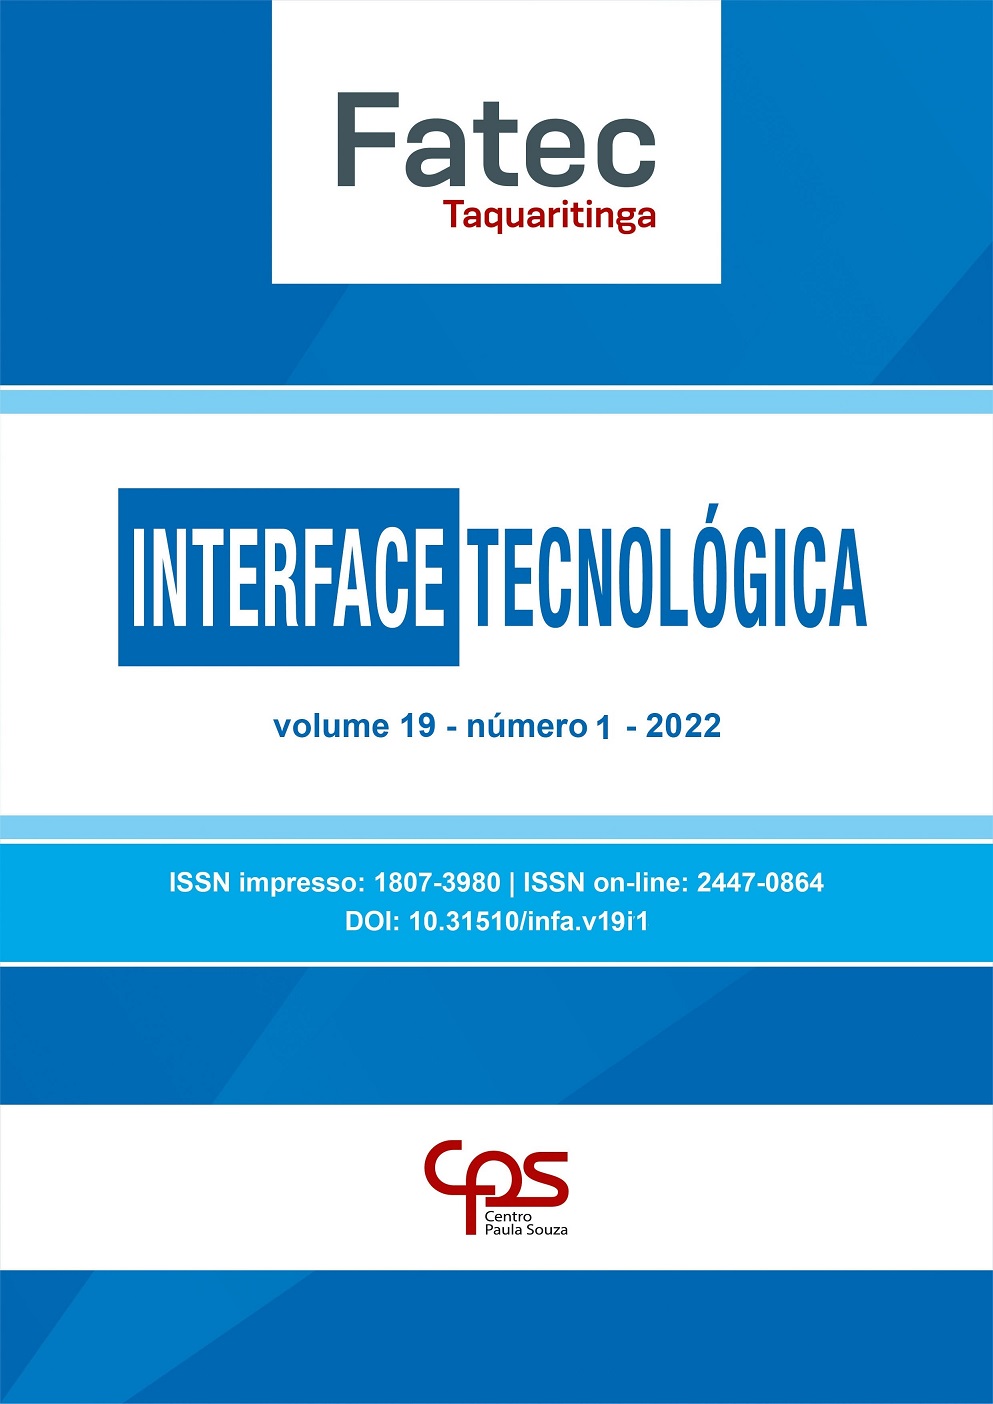 					Visualizar v. 19 n. 1 (2022): Revista Interface Tecnológica
				